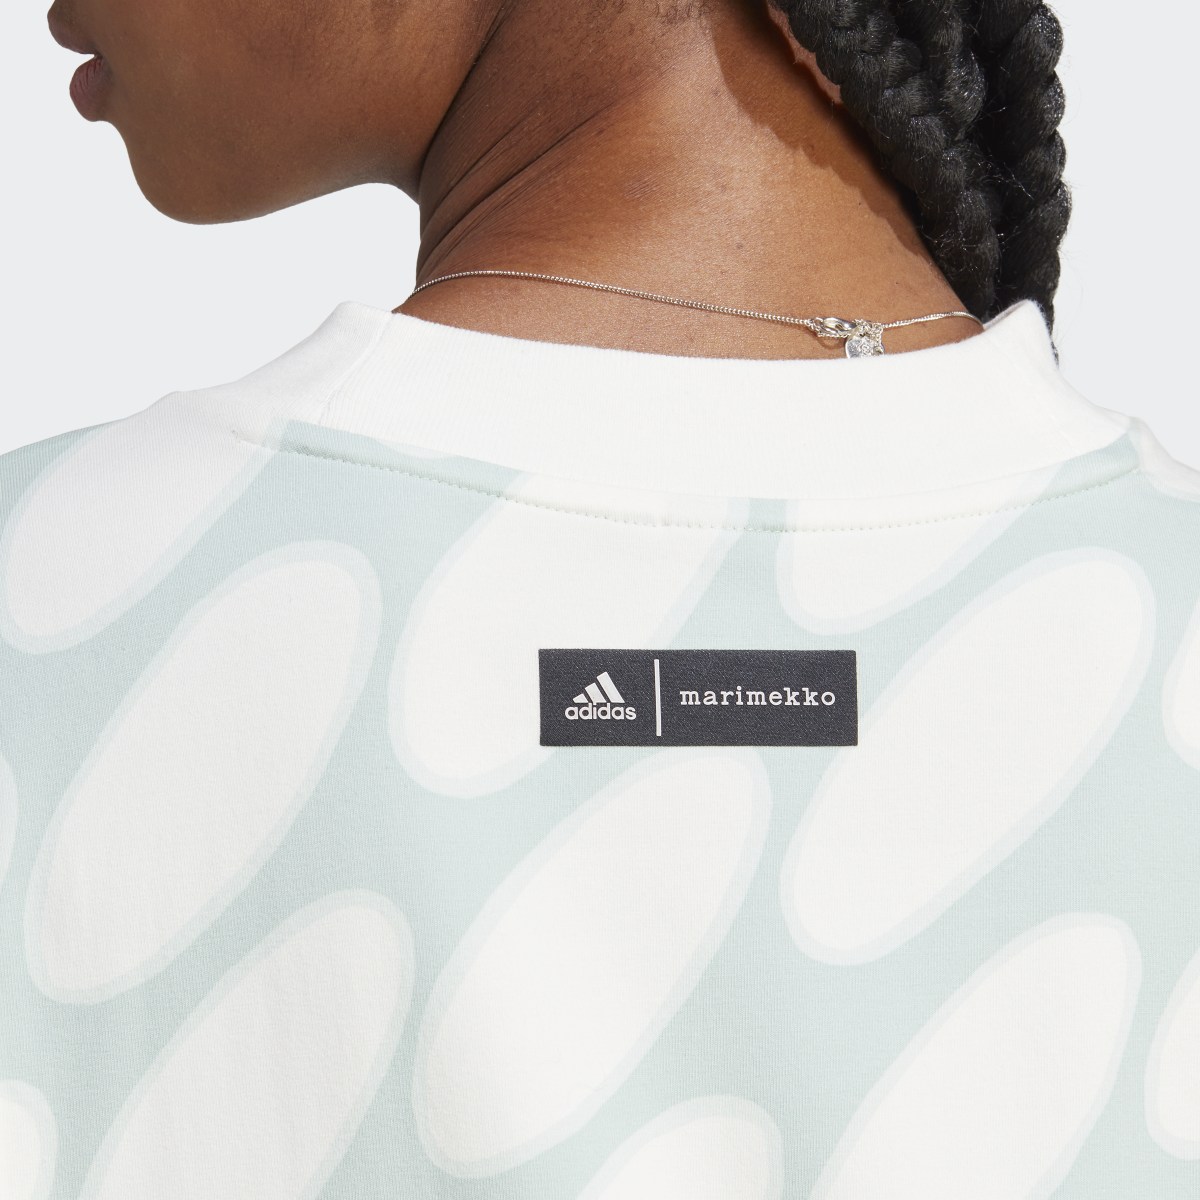 Adidas Marimekko Future Icons 3-Streifen T-Shirt. 7